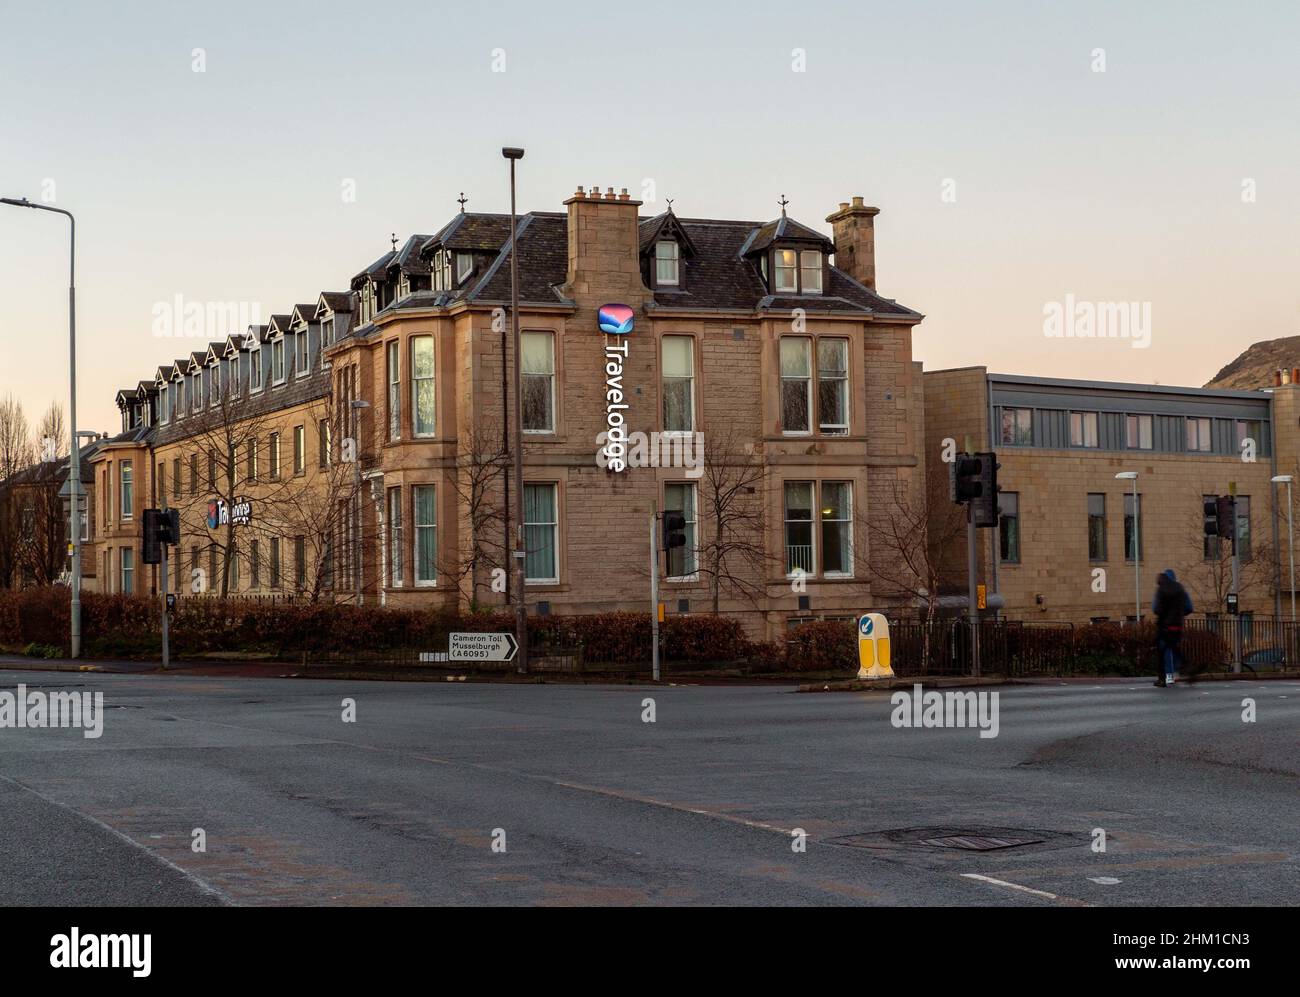 Travelodge on the south side of Edinburgh, Scotland, UK Stock Photo